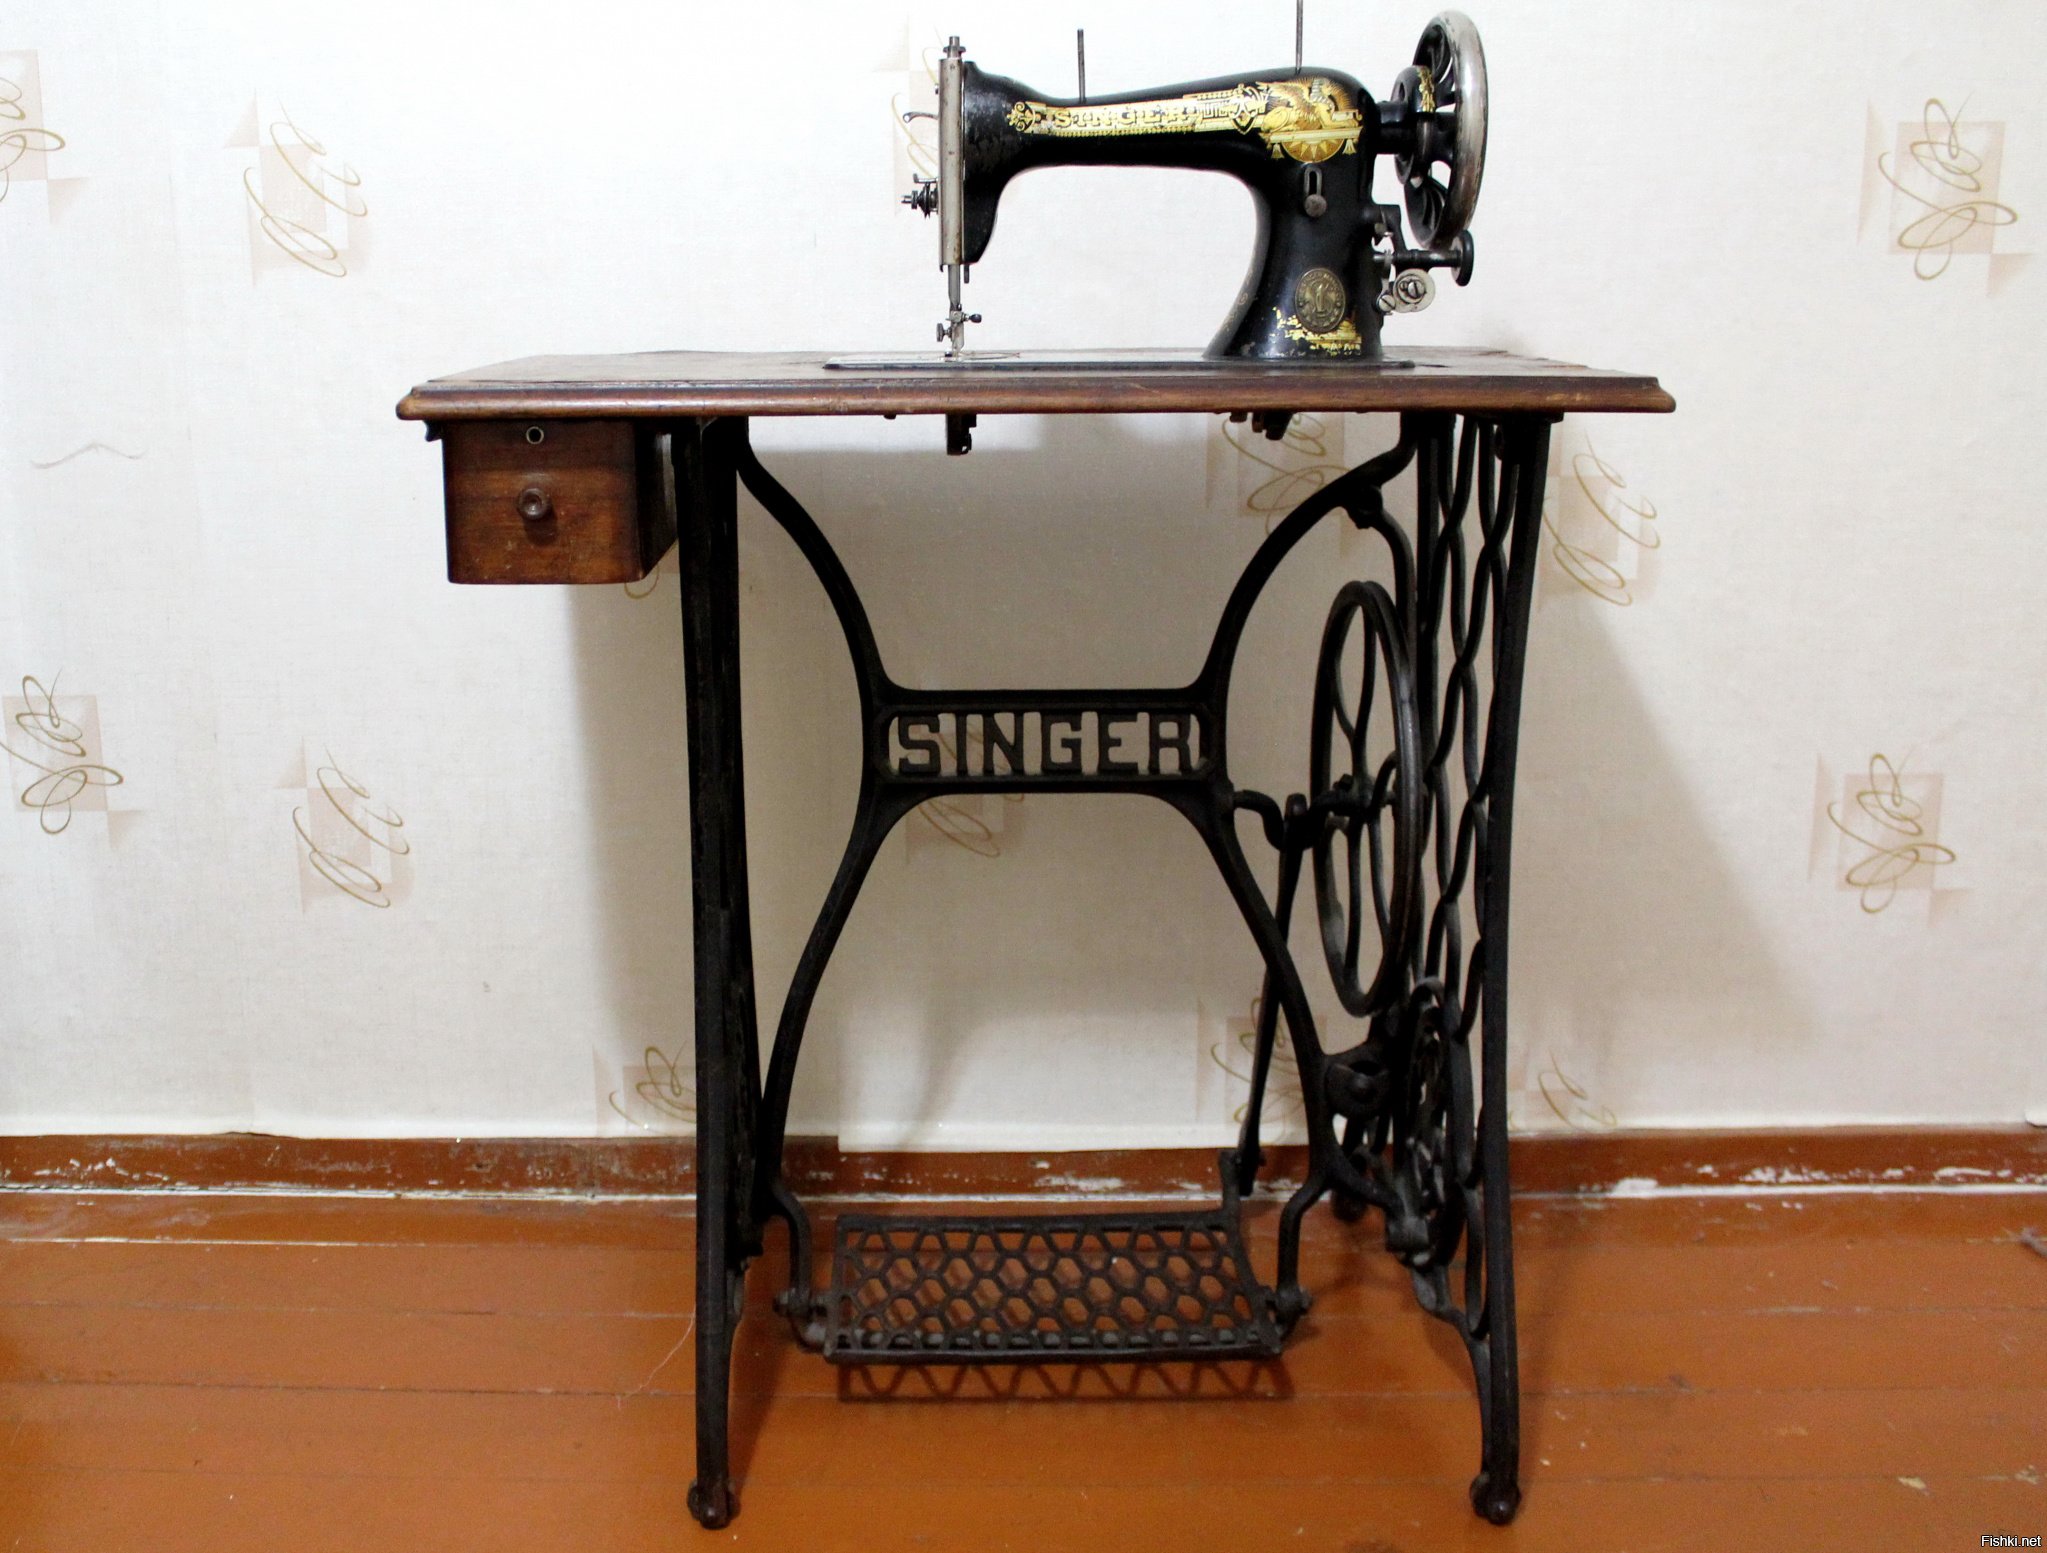 Купить ножную швейную машинку зингер. Швейная машинка (Zinger super 2001). Швейная машинка Зингер 1950 г. Zinger швейная машинка ножная. Машинка Зингер 2 швейная.